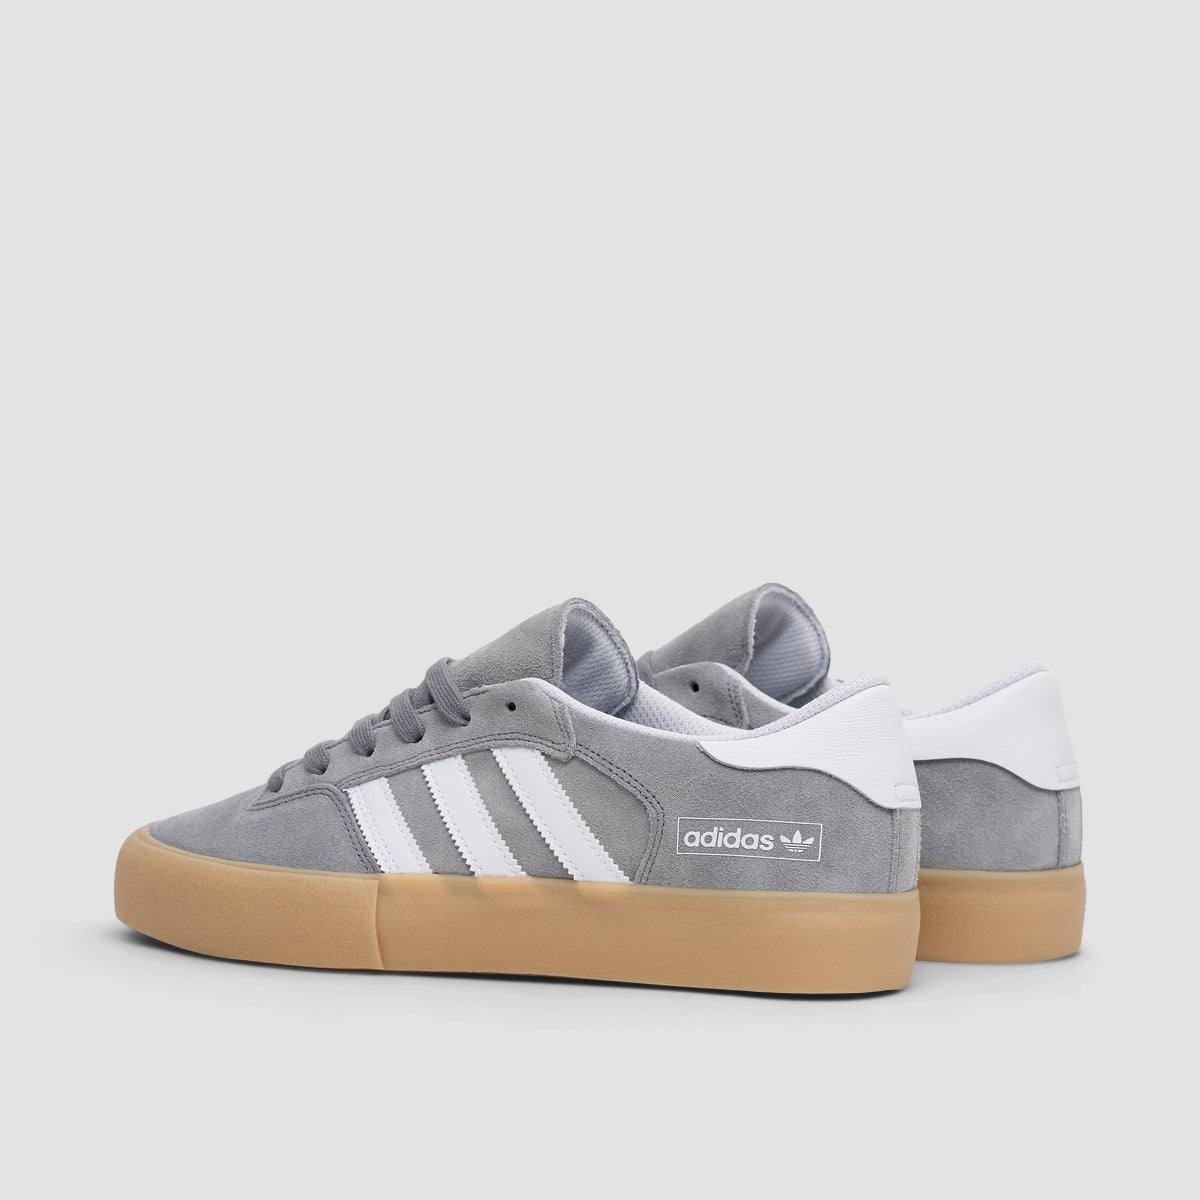 adidas Matchbreak Super Shoes - Grey Three/Footwear White/Gum3 - Unisex L